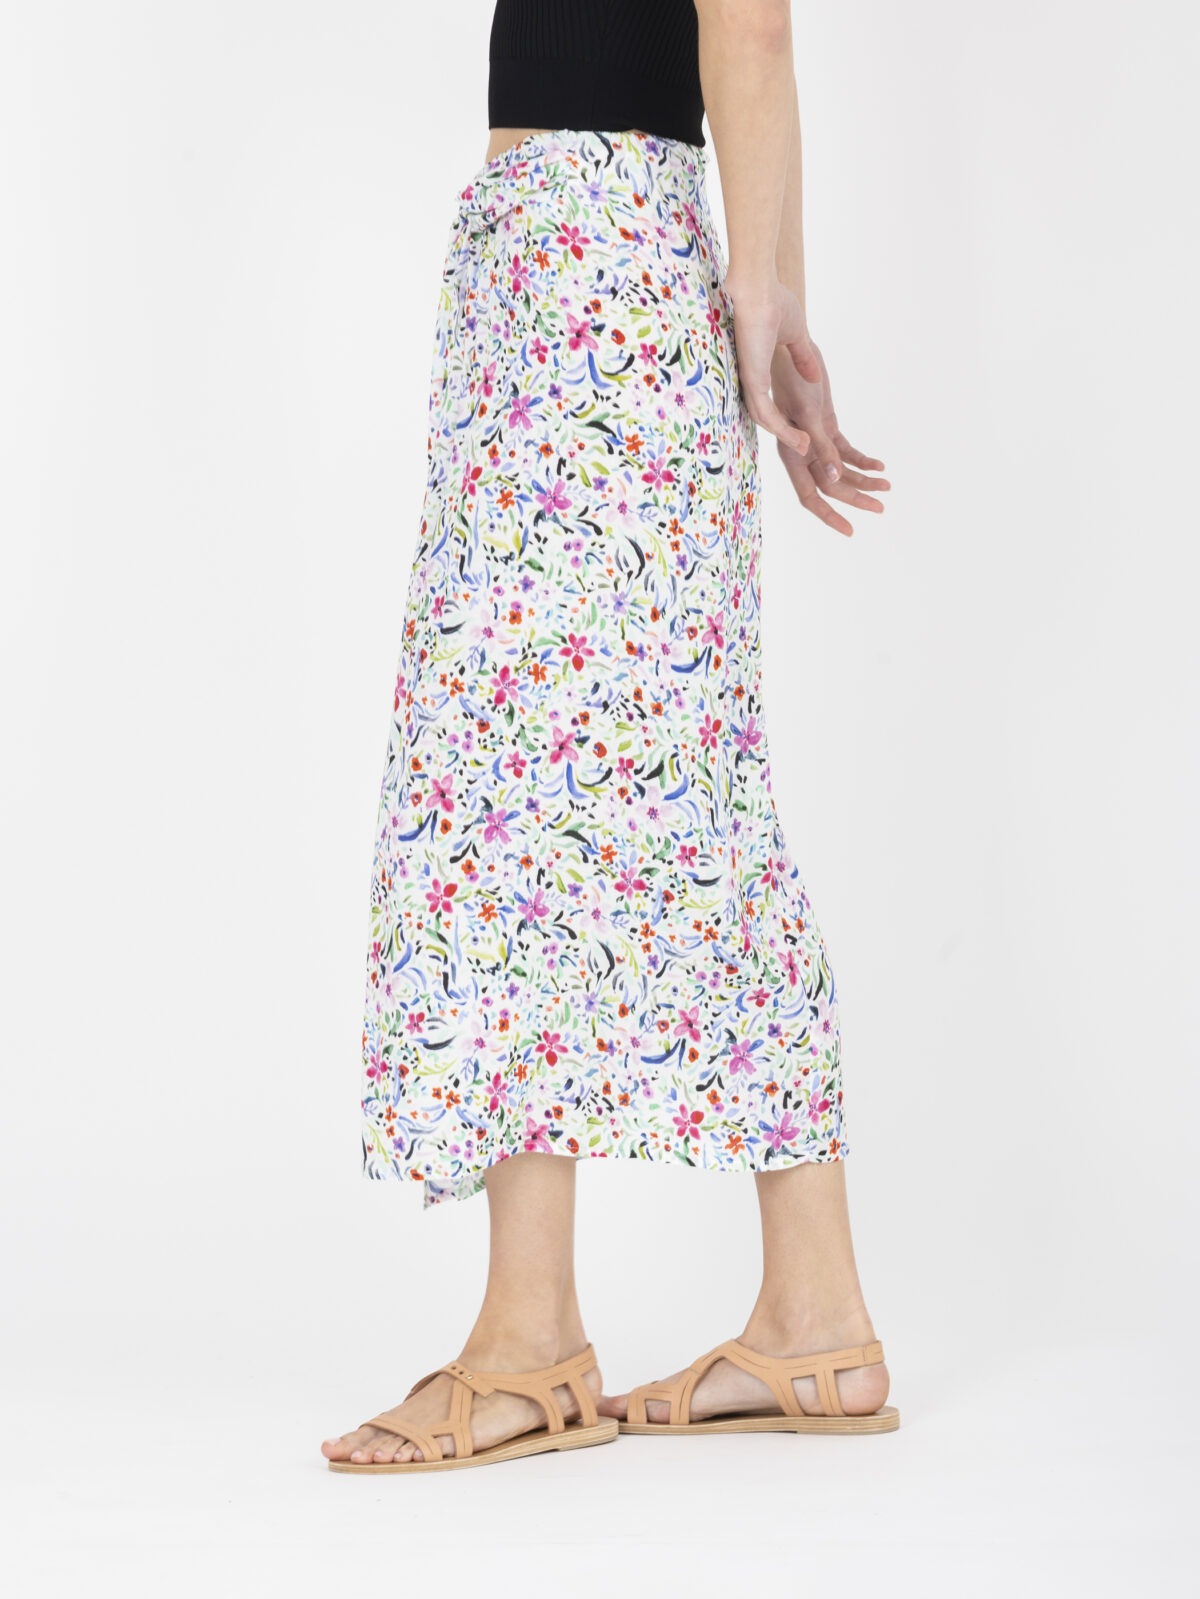 sylvia-white-floral-midi-skirt-sarong-greek-designers-uniforme-athens-matchboxathens